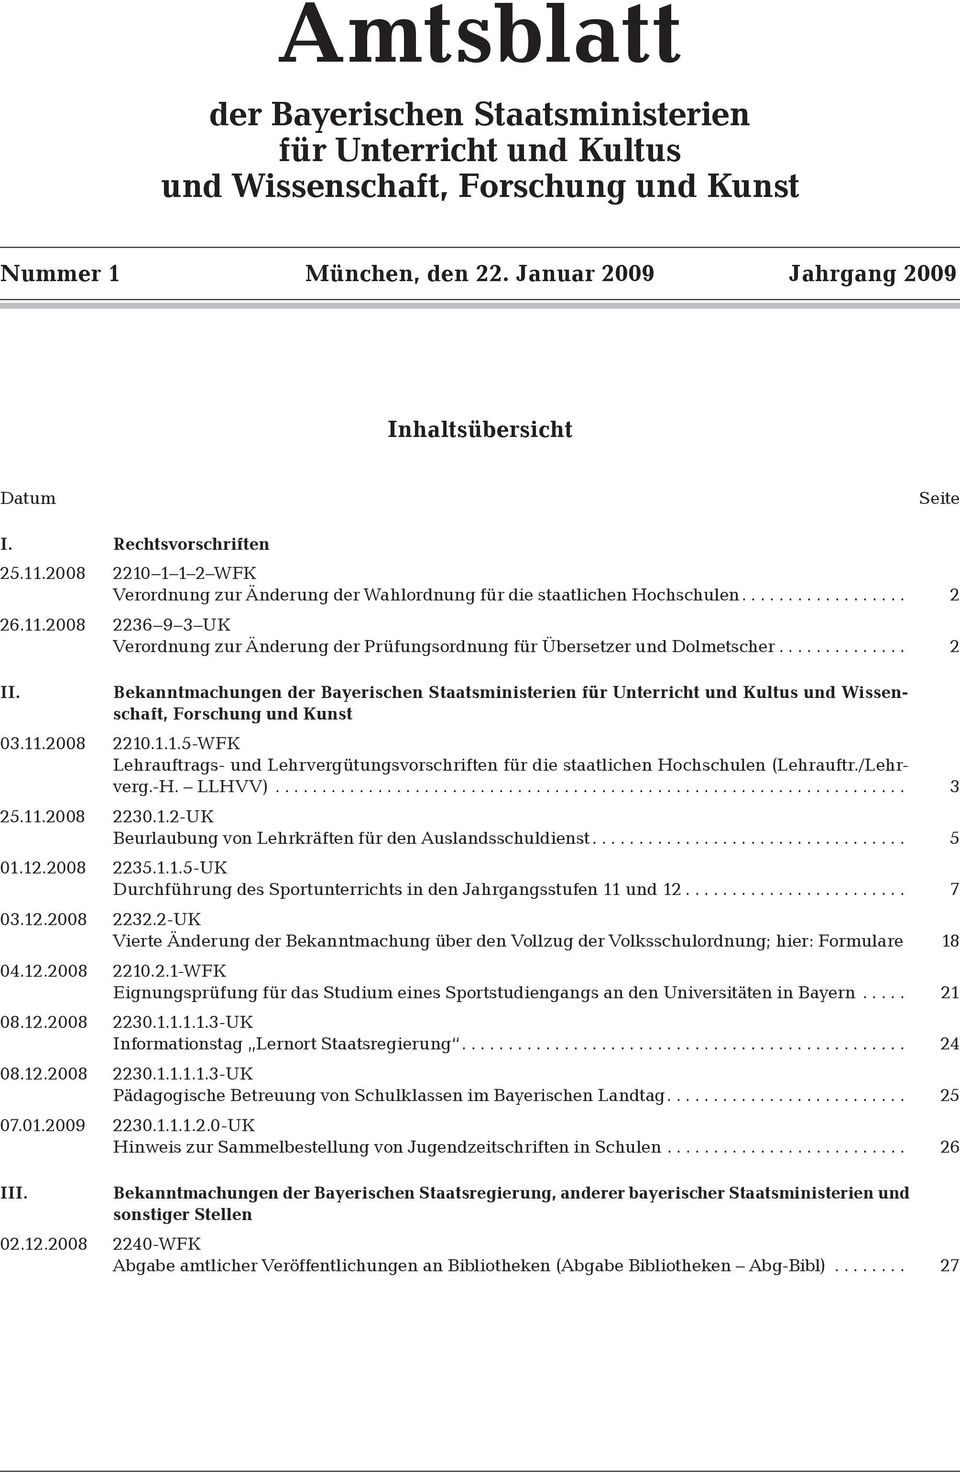 ............. 2 II. Bekanntmachungen der Bayerischen Staatsministerien für Unterricht und Kultus und Wissenschaft, Forschung und Kunst 03.11